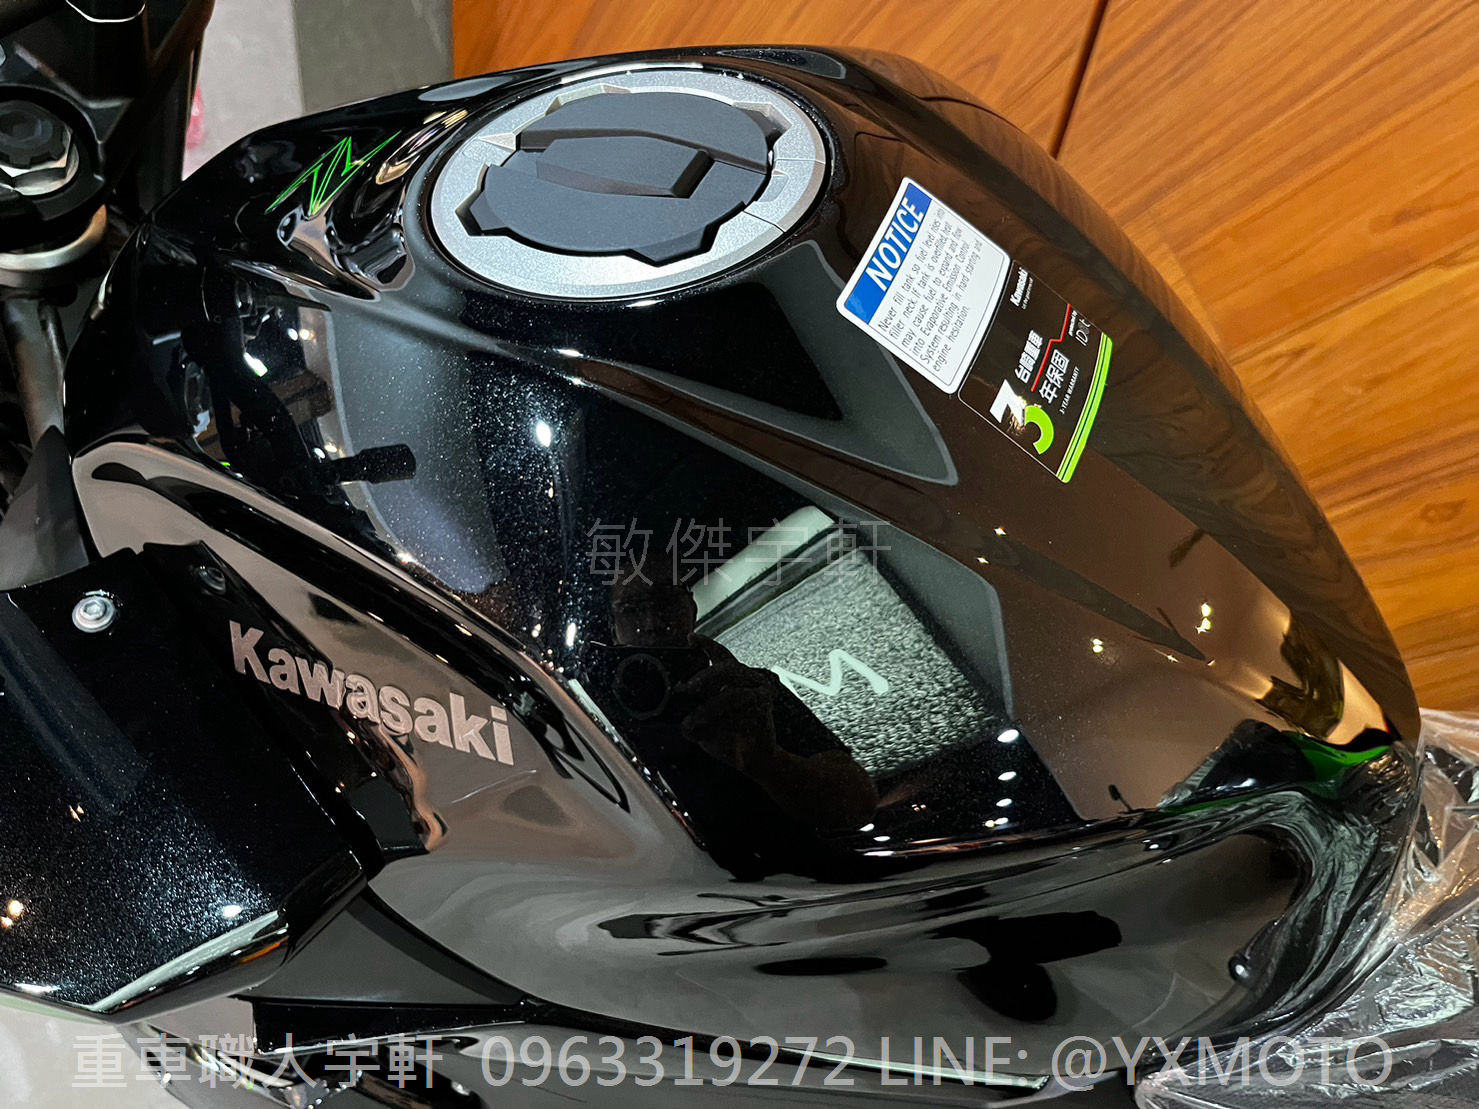 KAWASAKI Z400新車出售中 【敏傑宇軒】全額72期零利率 ! 2023 KAWASAKI Z400 黑綠色 總代理公司車 | 重車銷售職人-宇軒 (敏傑)